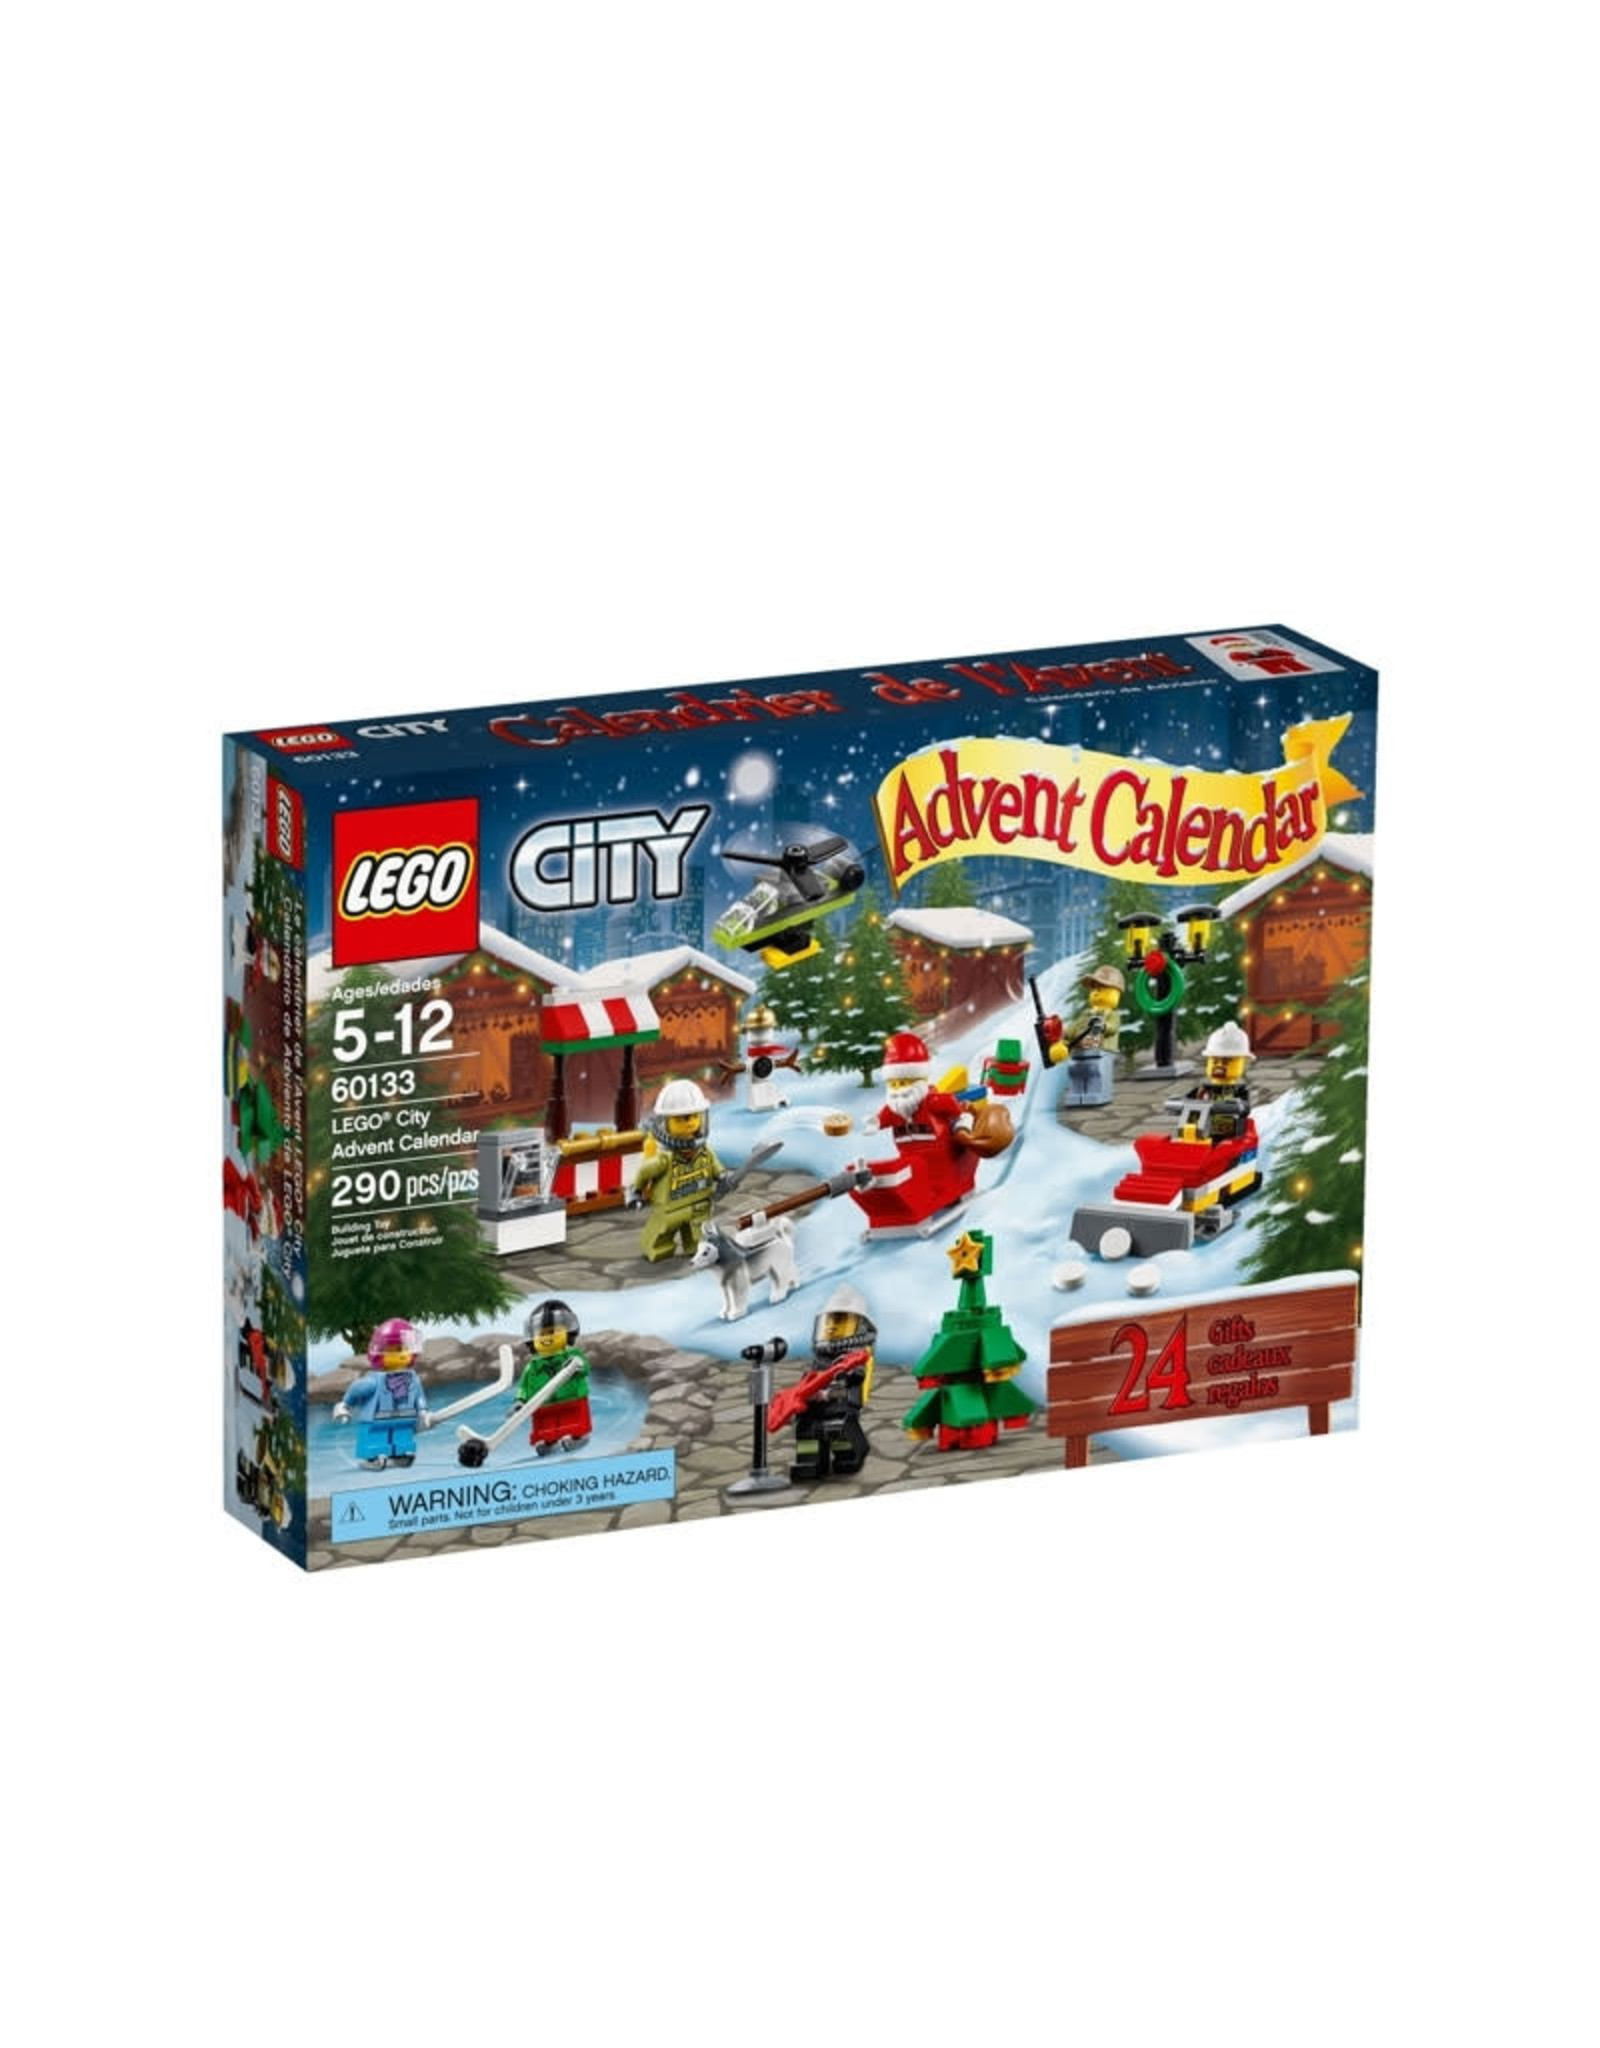 LEGO LEGO 60133 Adventkalender CITY SPECIALS